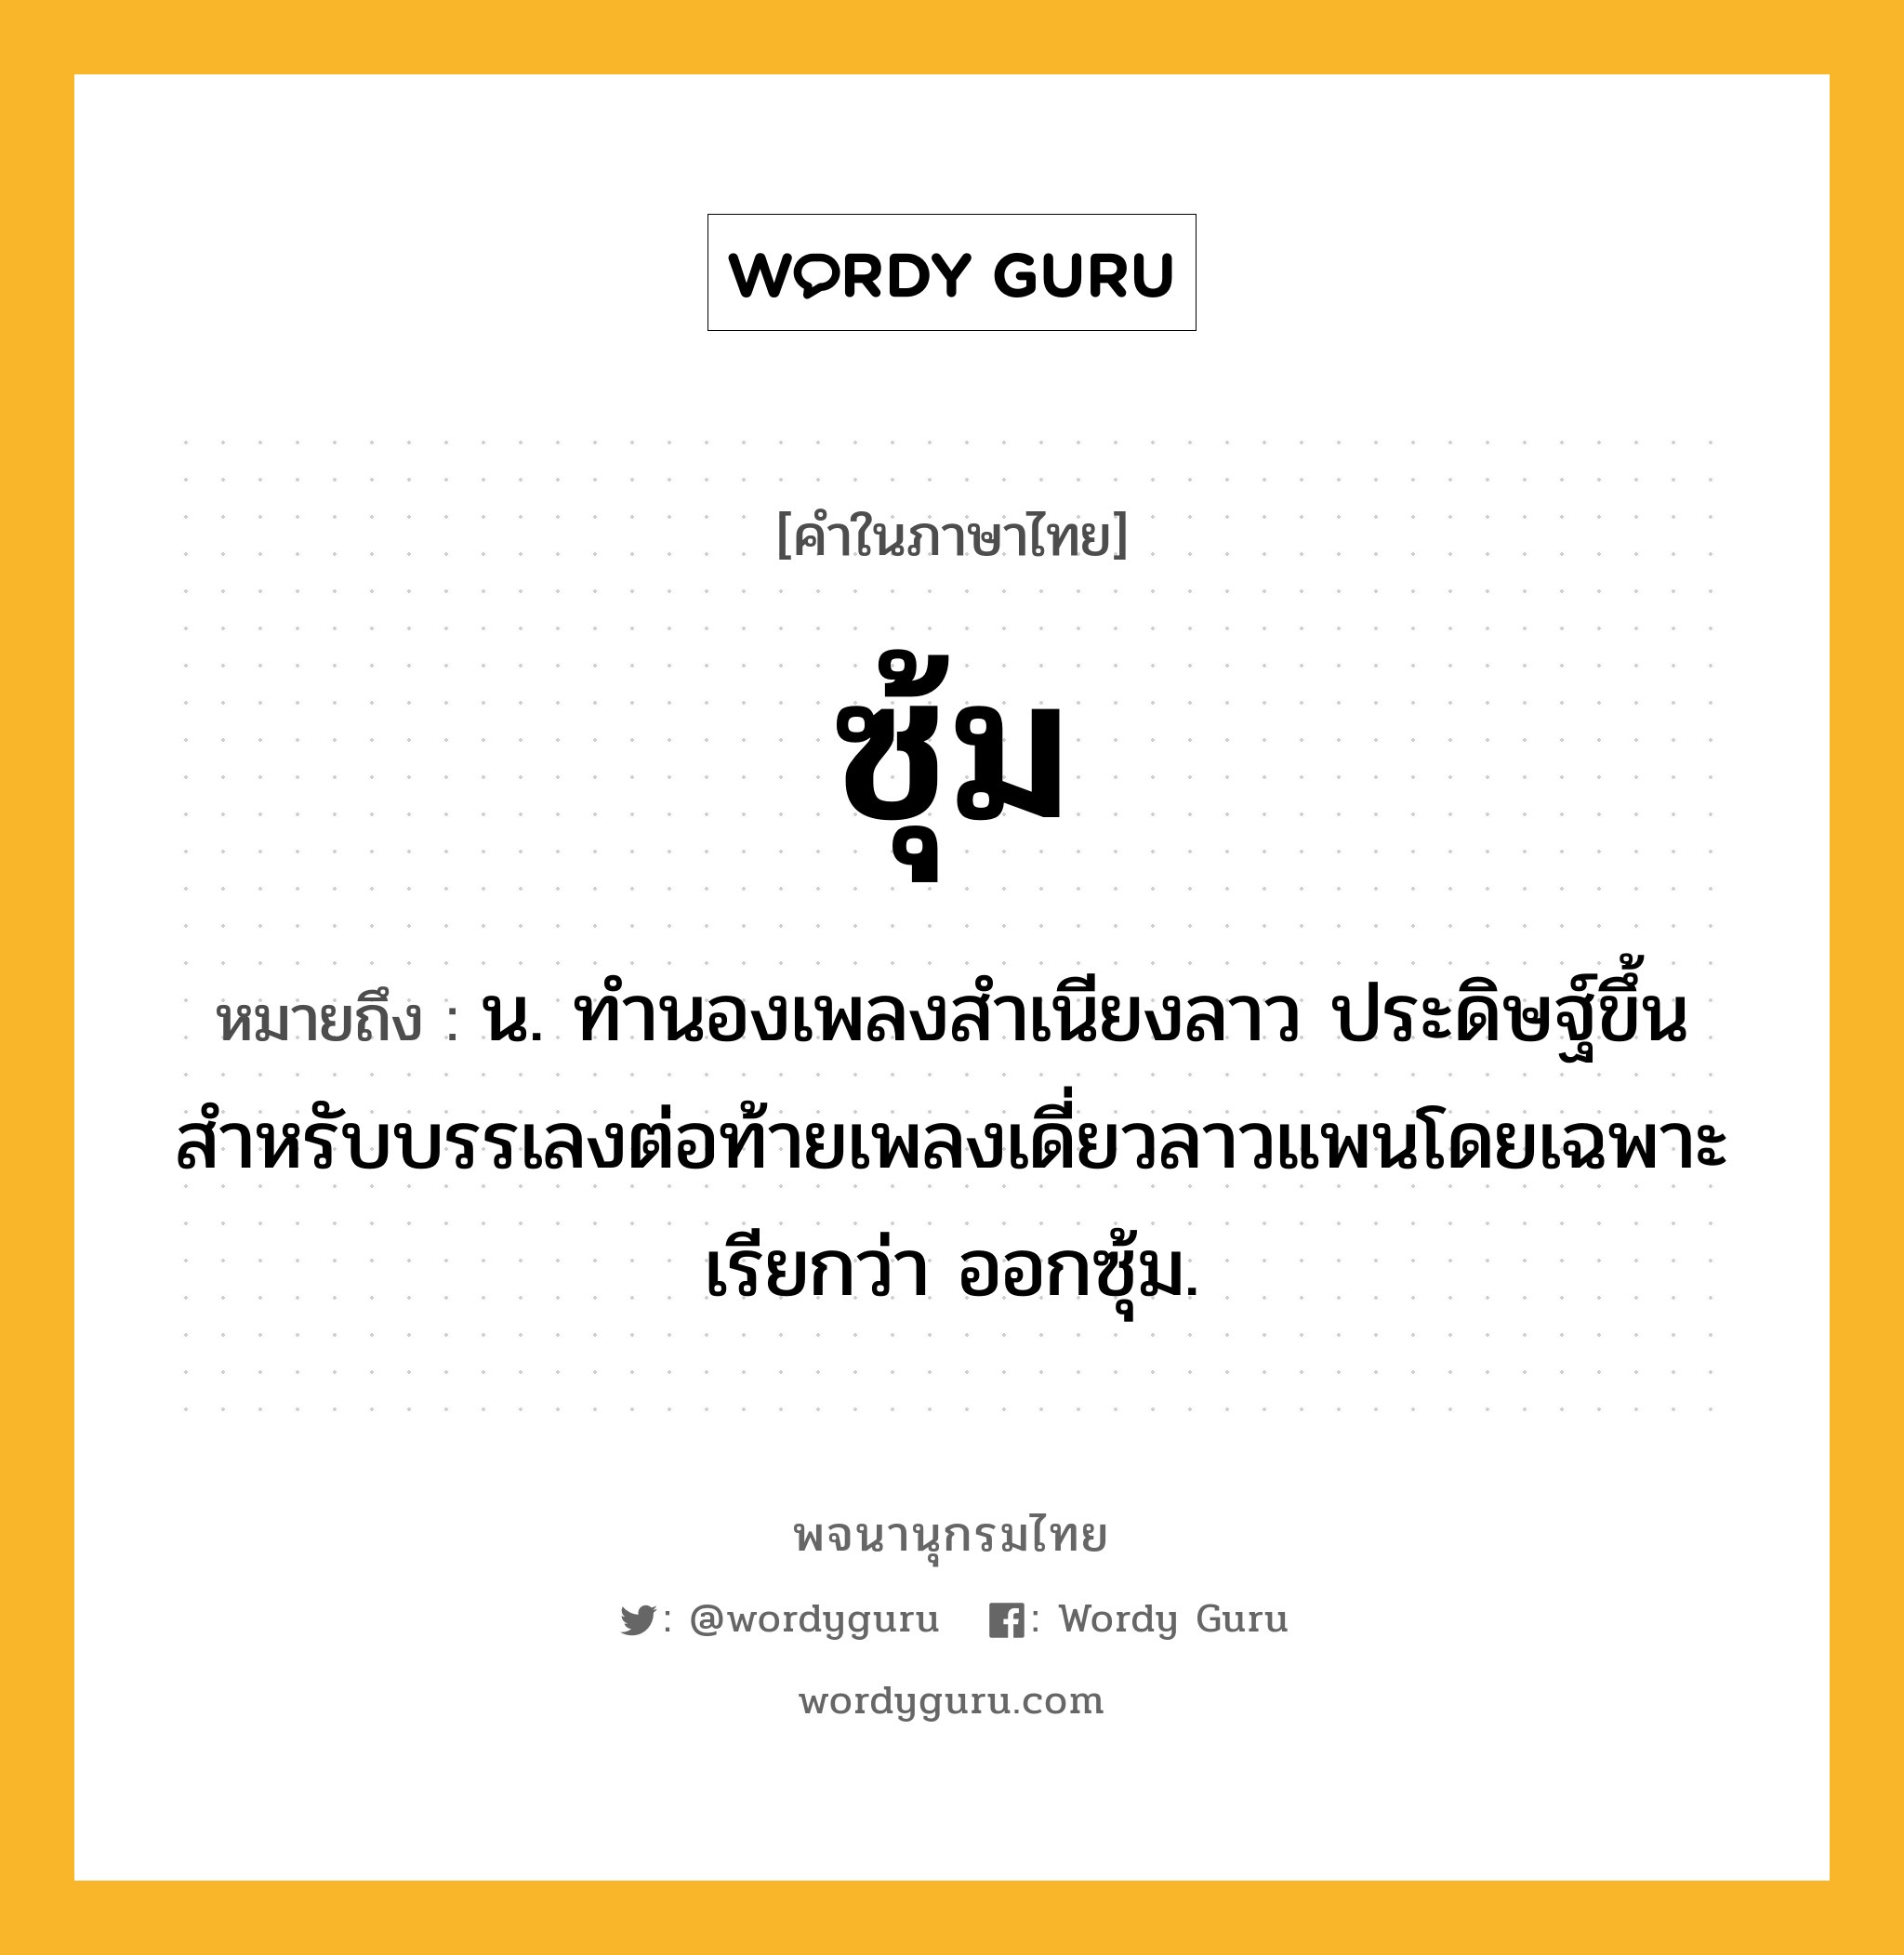 ซุ้ม ความหมาย หมายถึงอะไร?, คำในภาษาไทย ซุ้ม หมายถึง น. ทำนองเพลงสำเนียงลาว ประดิษฐ์ขึ้นสำหรับบรรเลงต่อท้ายเพลงเดี่ยวลาวแพนโดยเฉพาะ เรียกว่า ออกซุ้ม.